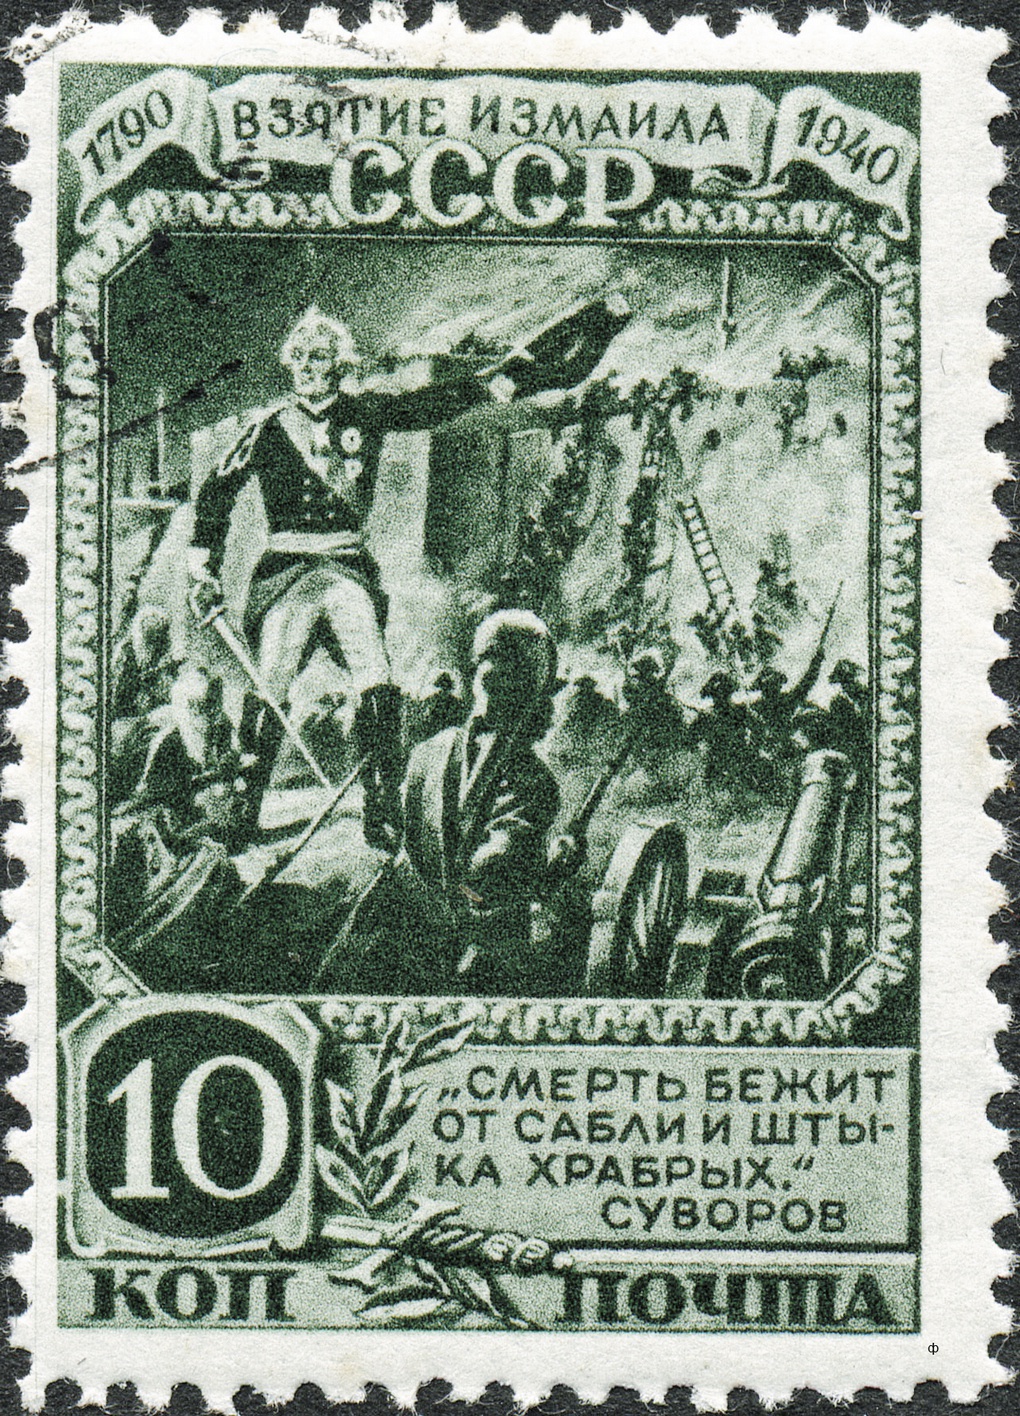 Почтовая марка «Взятие Измаила».